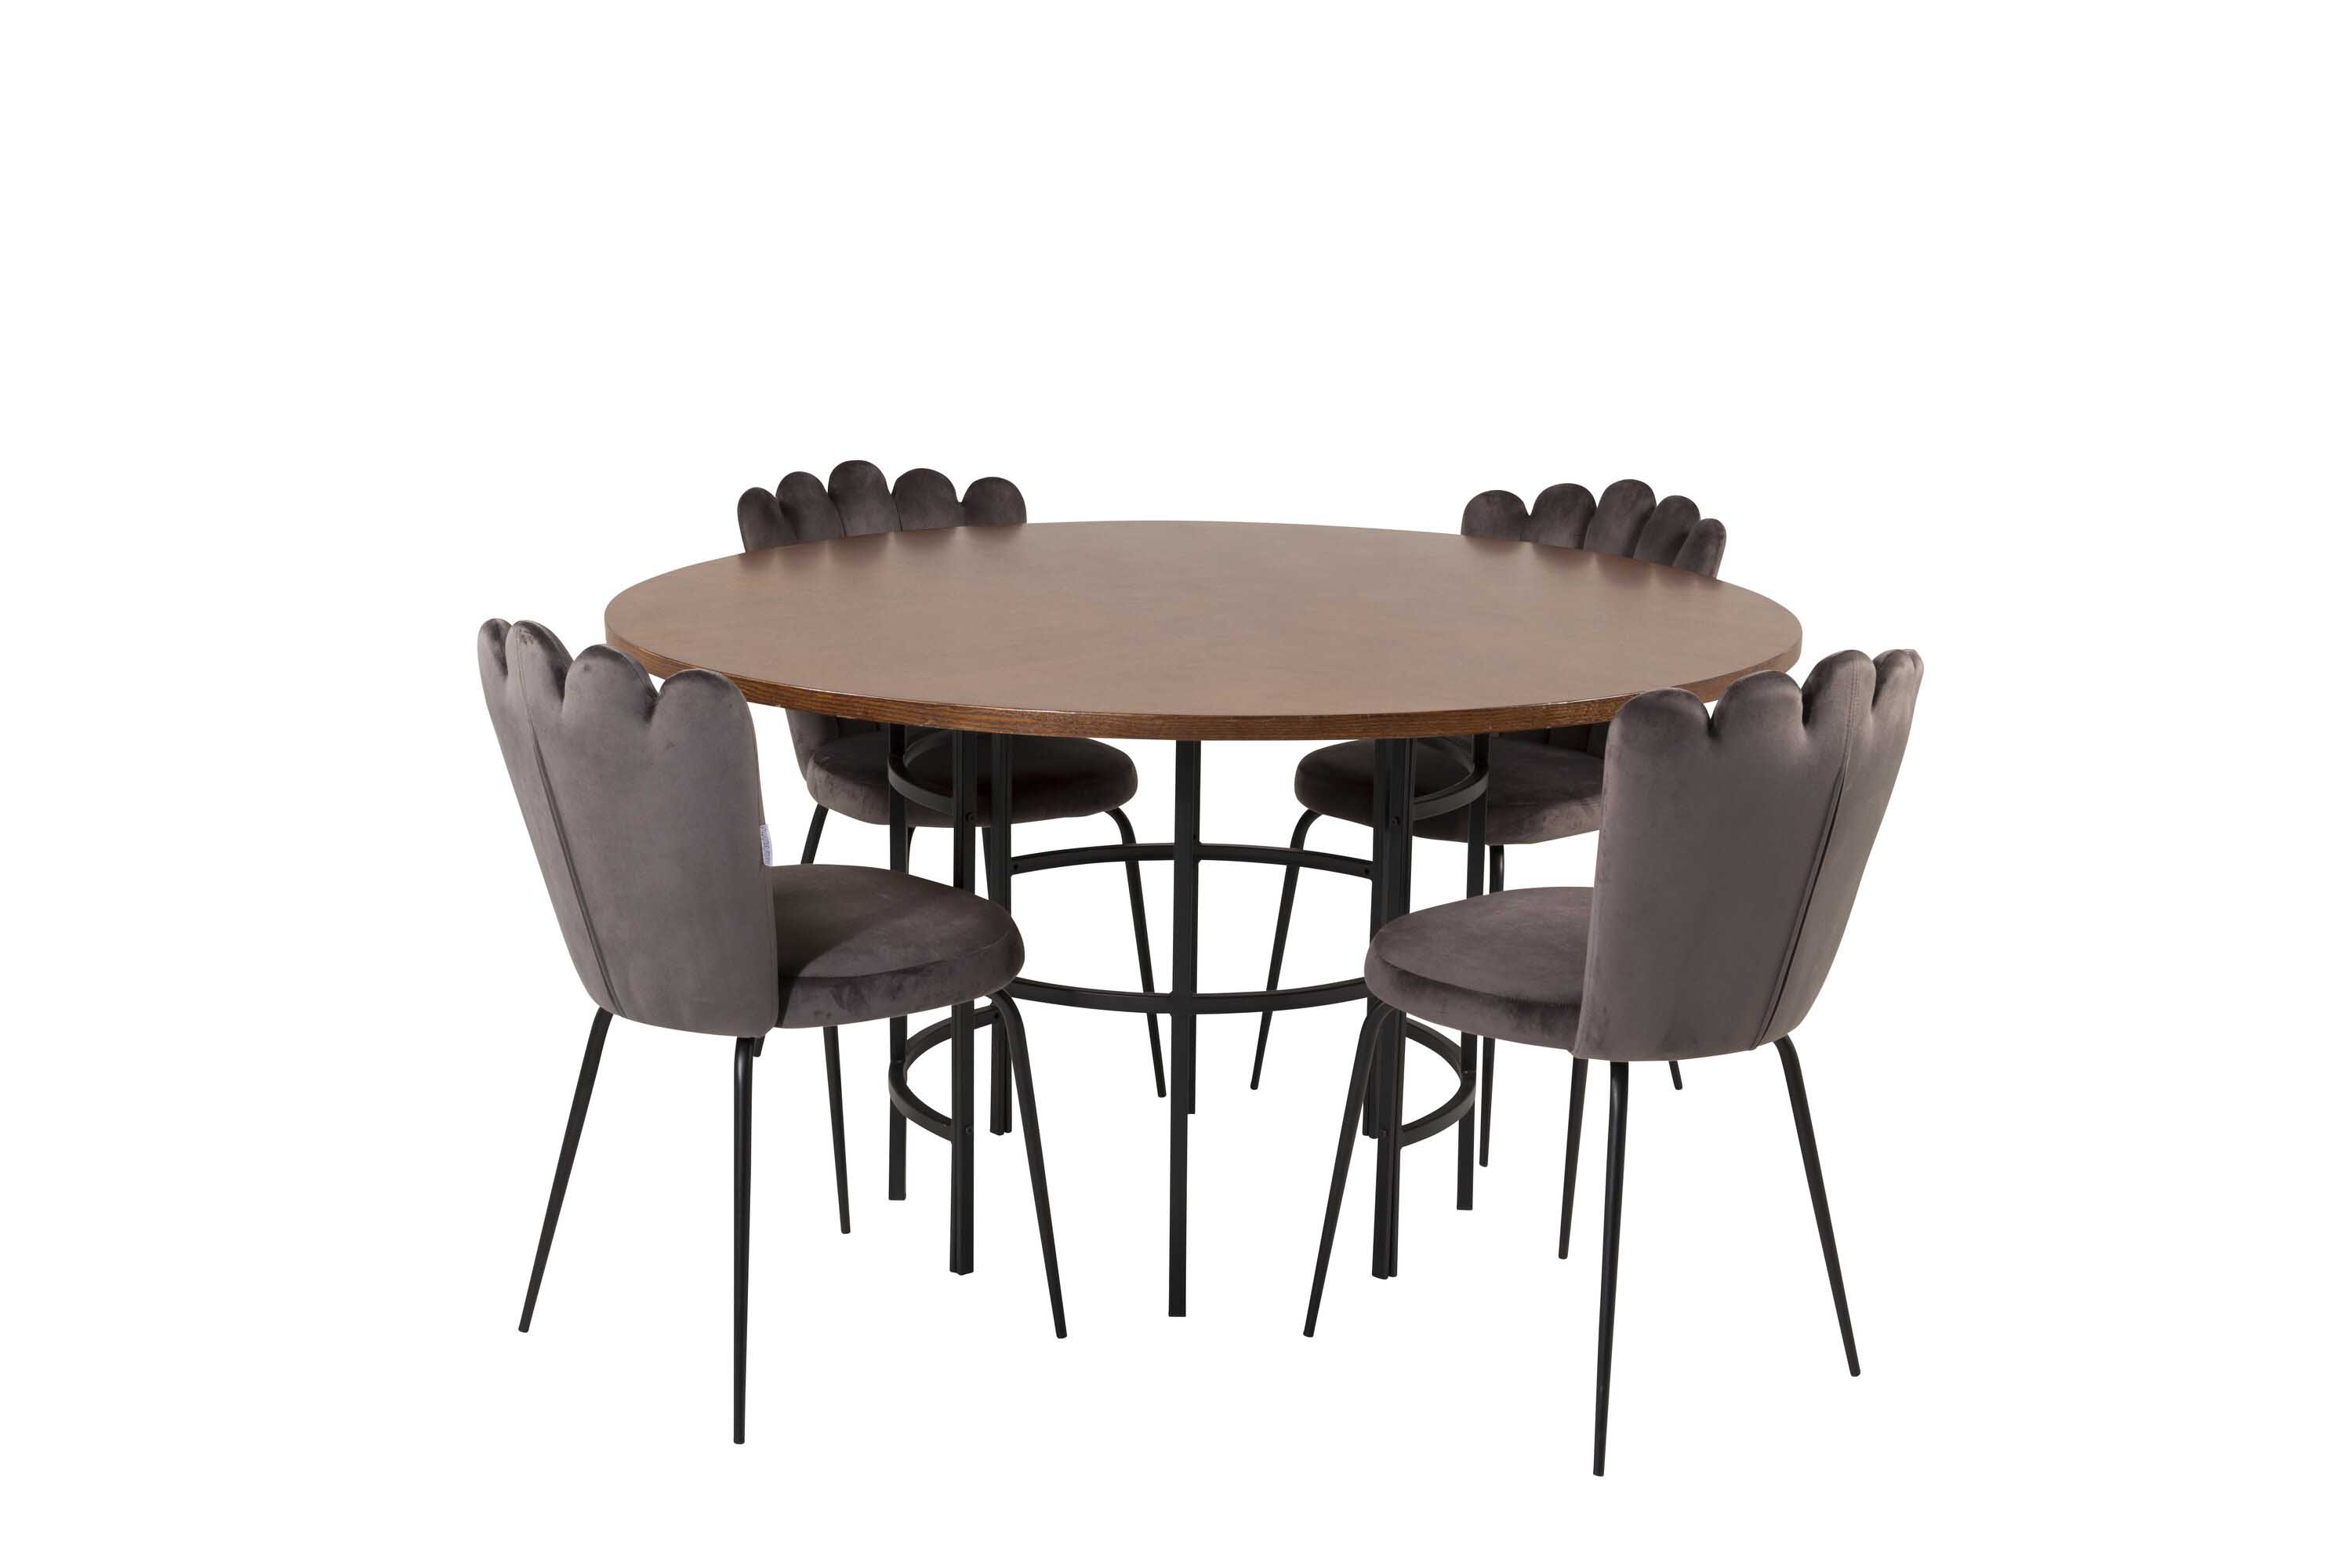 Venture Design Copenhagen & Limhamn spisegruppe Brun/grå 4 st stoler & bord 140 cm